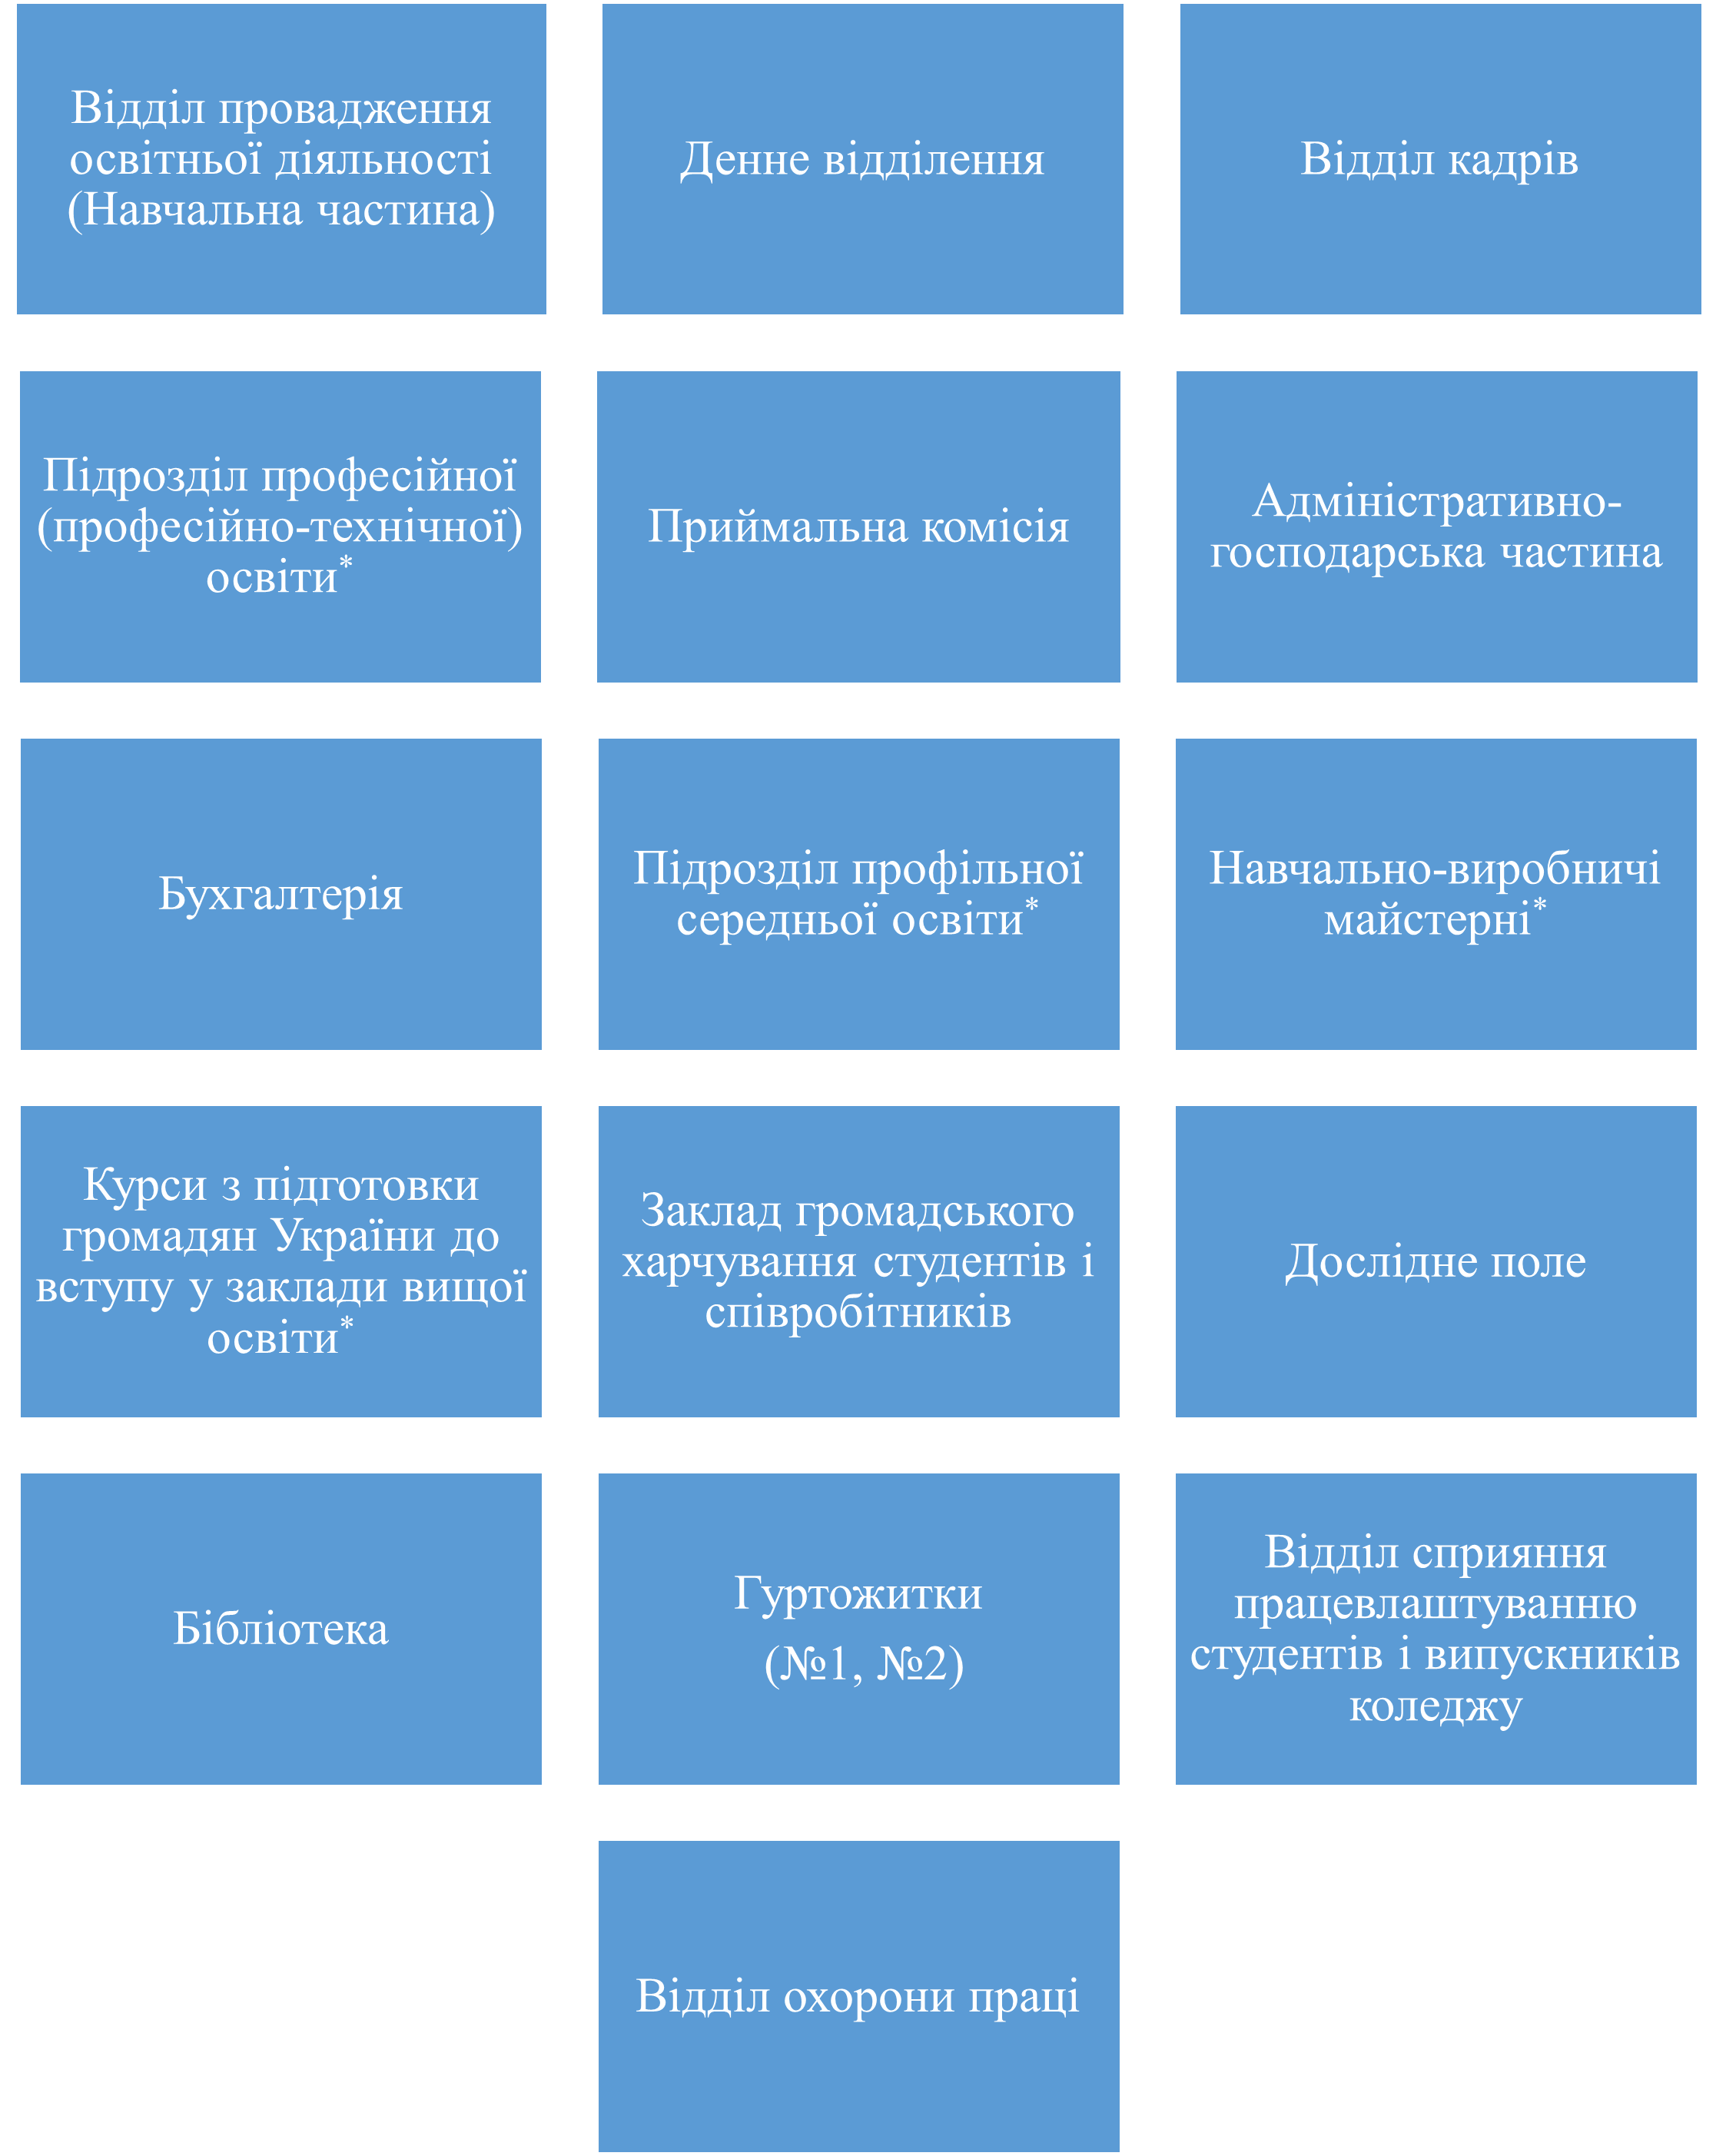 Структура ВСП "ВФК ДДАЕУ"